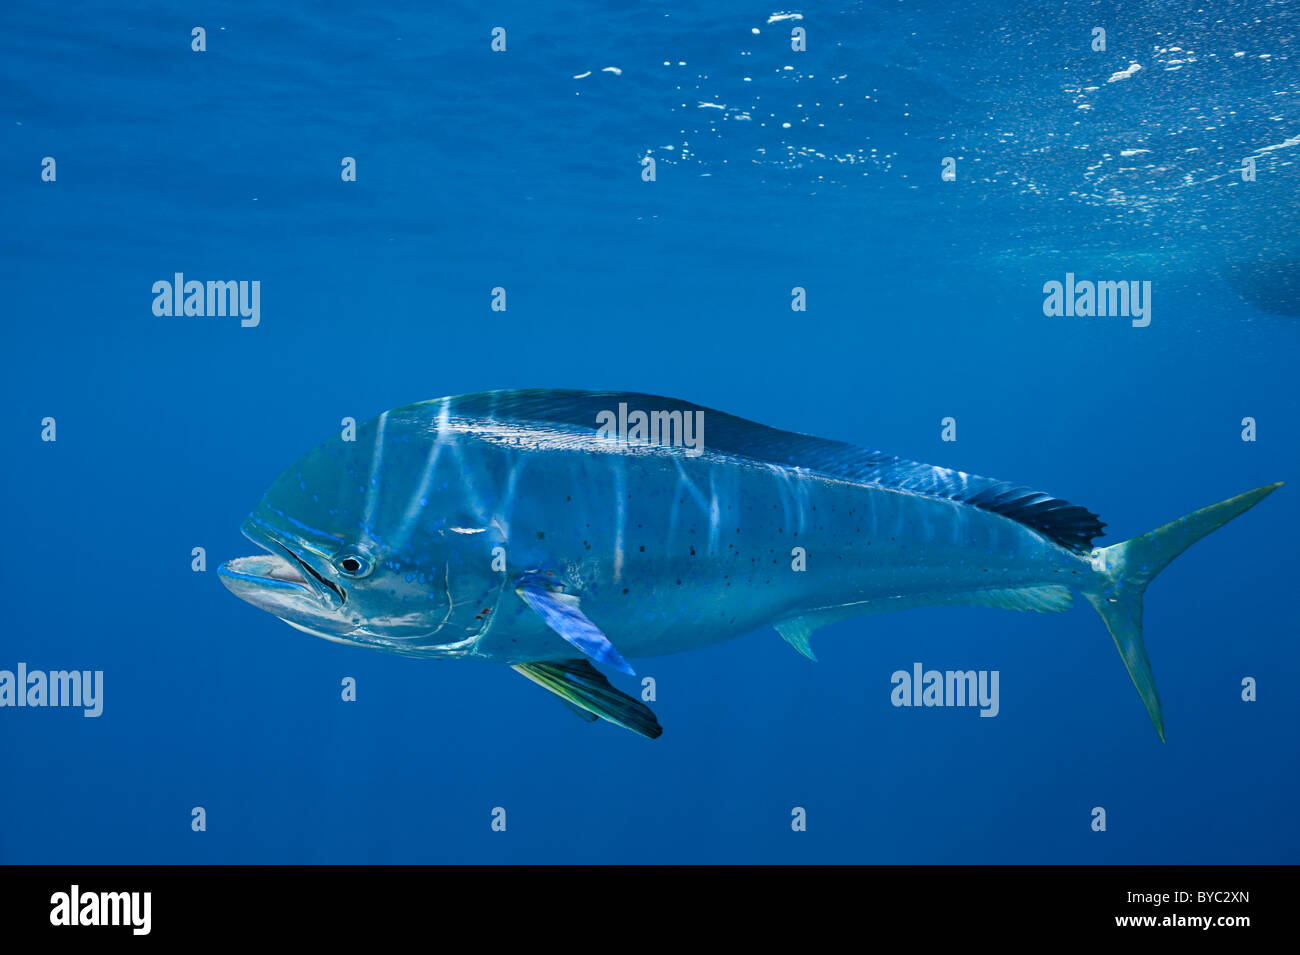 dorado, mahi mahi, or dolphin fish, Coryphaena hippurus, Isla Mujeres, Mexico ( Caribbean Sea ) Stock Photo